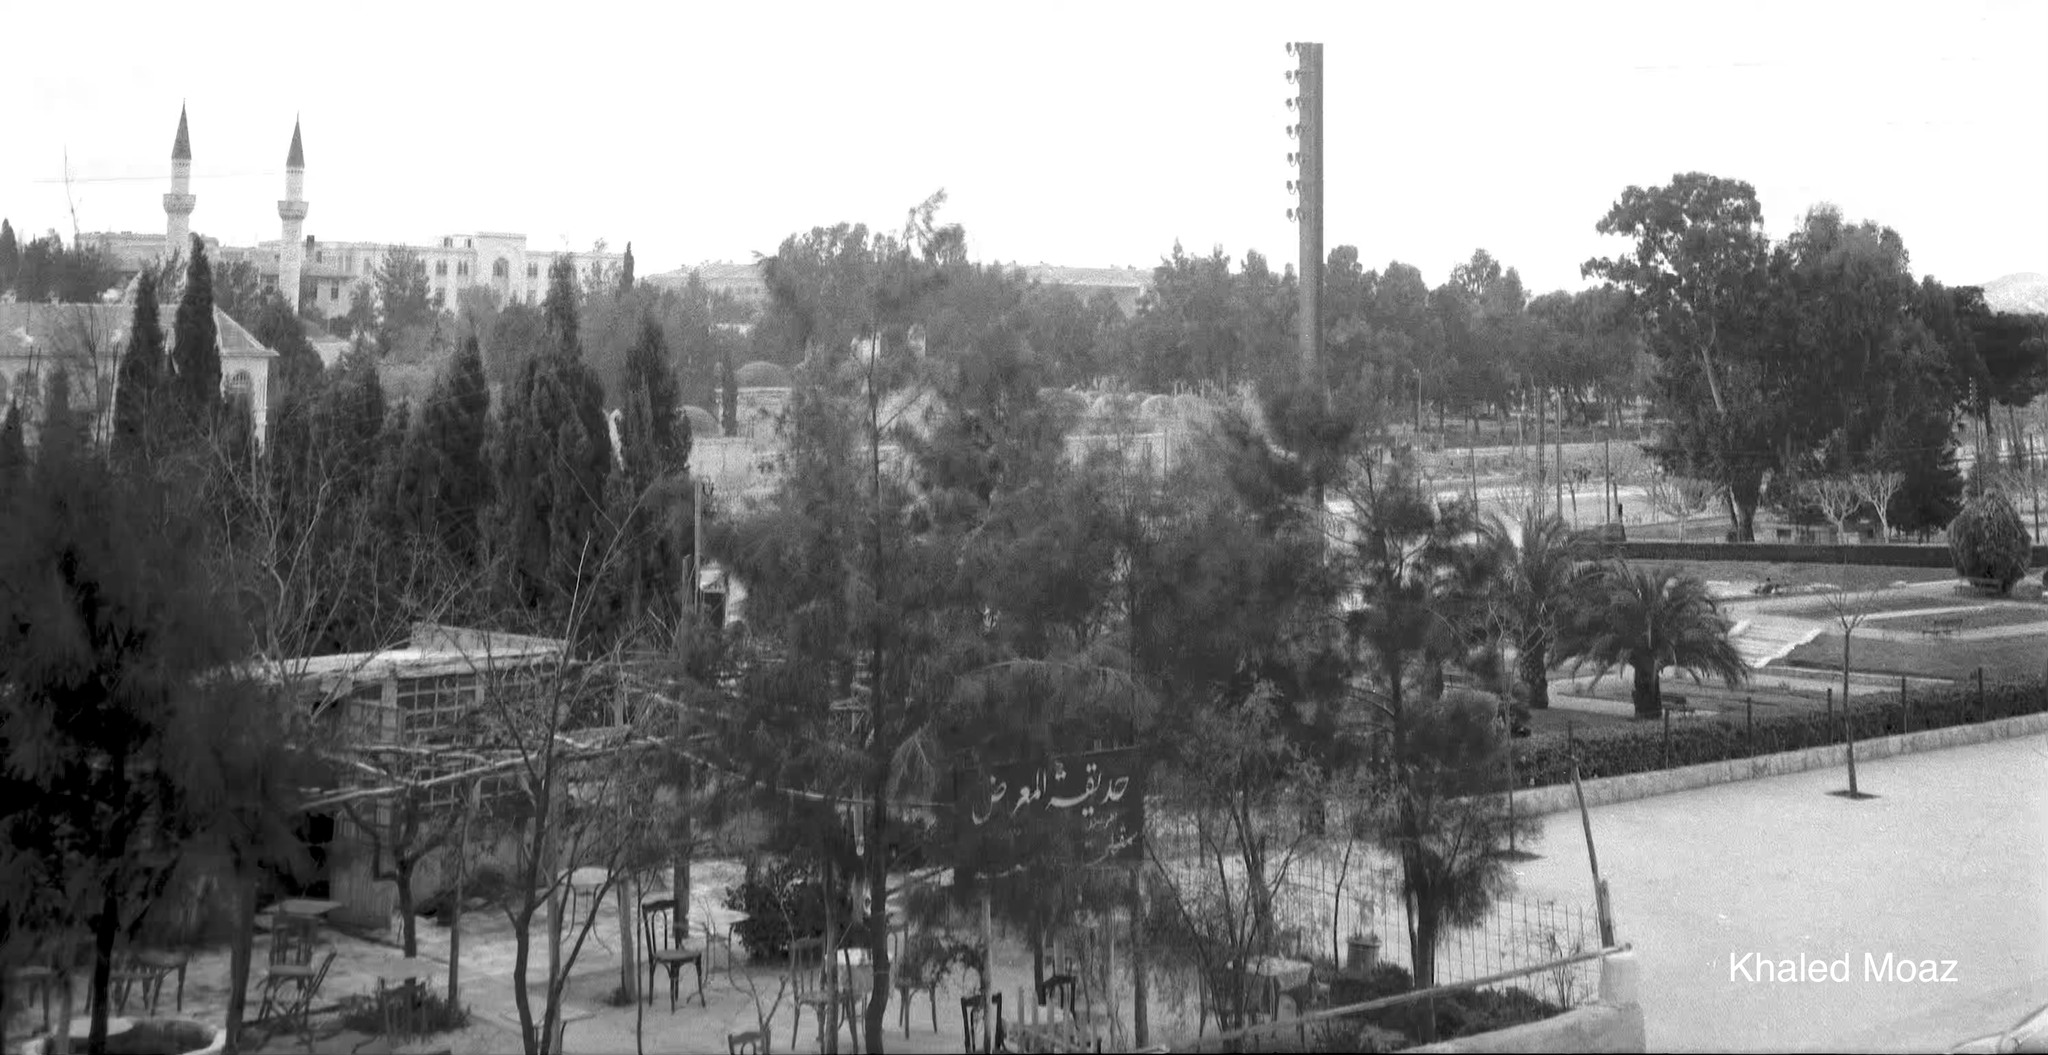 التاريخ السوري المعاصر - حديقة معرض دمشق الدولي في خمسينيات القرن العشرين